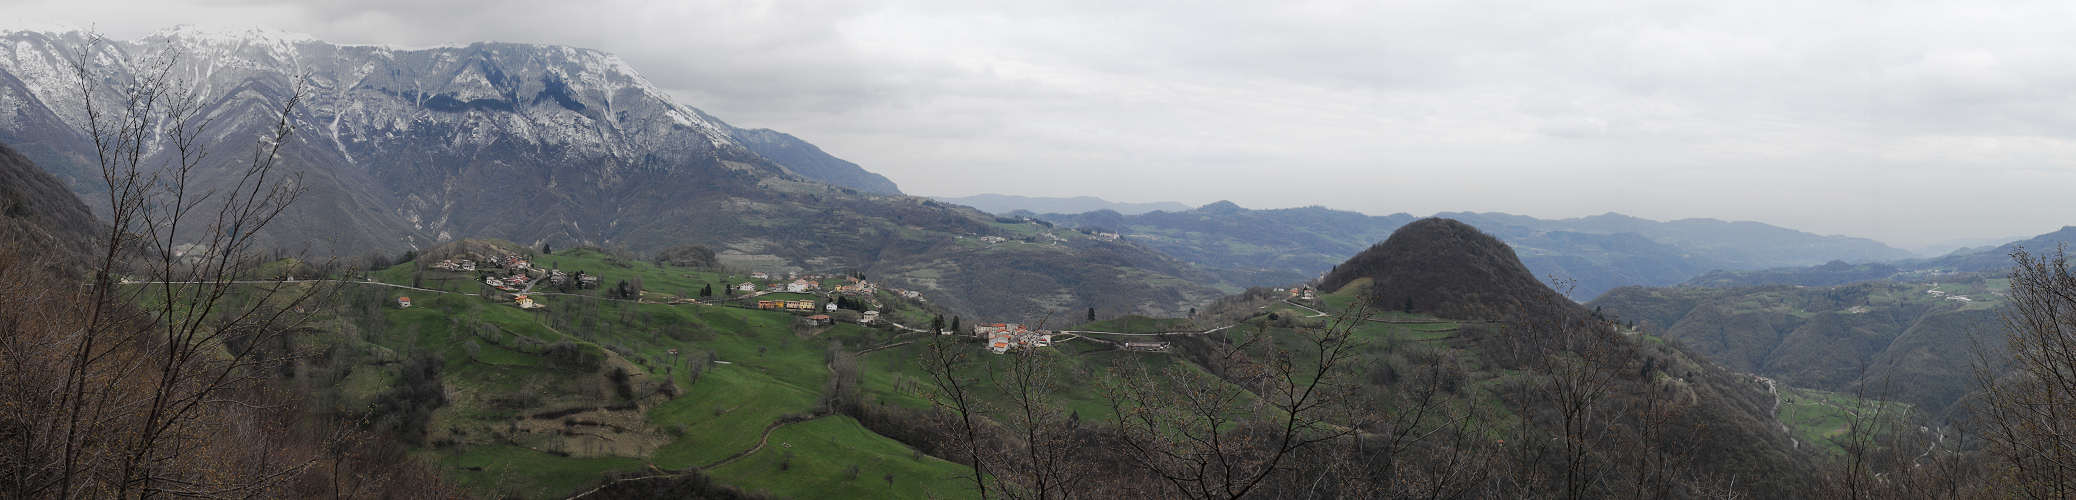 Durlo di Crespadoro, Vicenza alta valle del Chiampo, monti Lessini